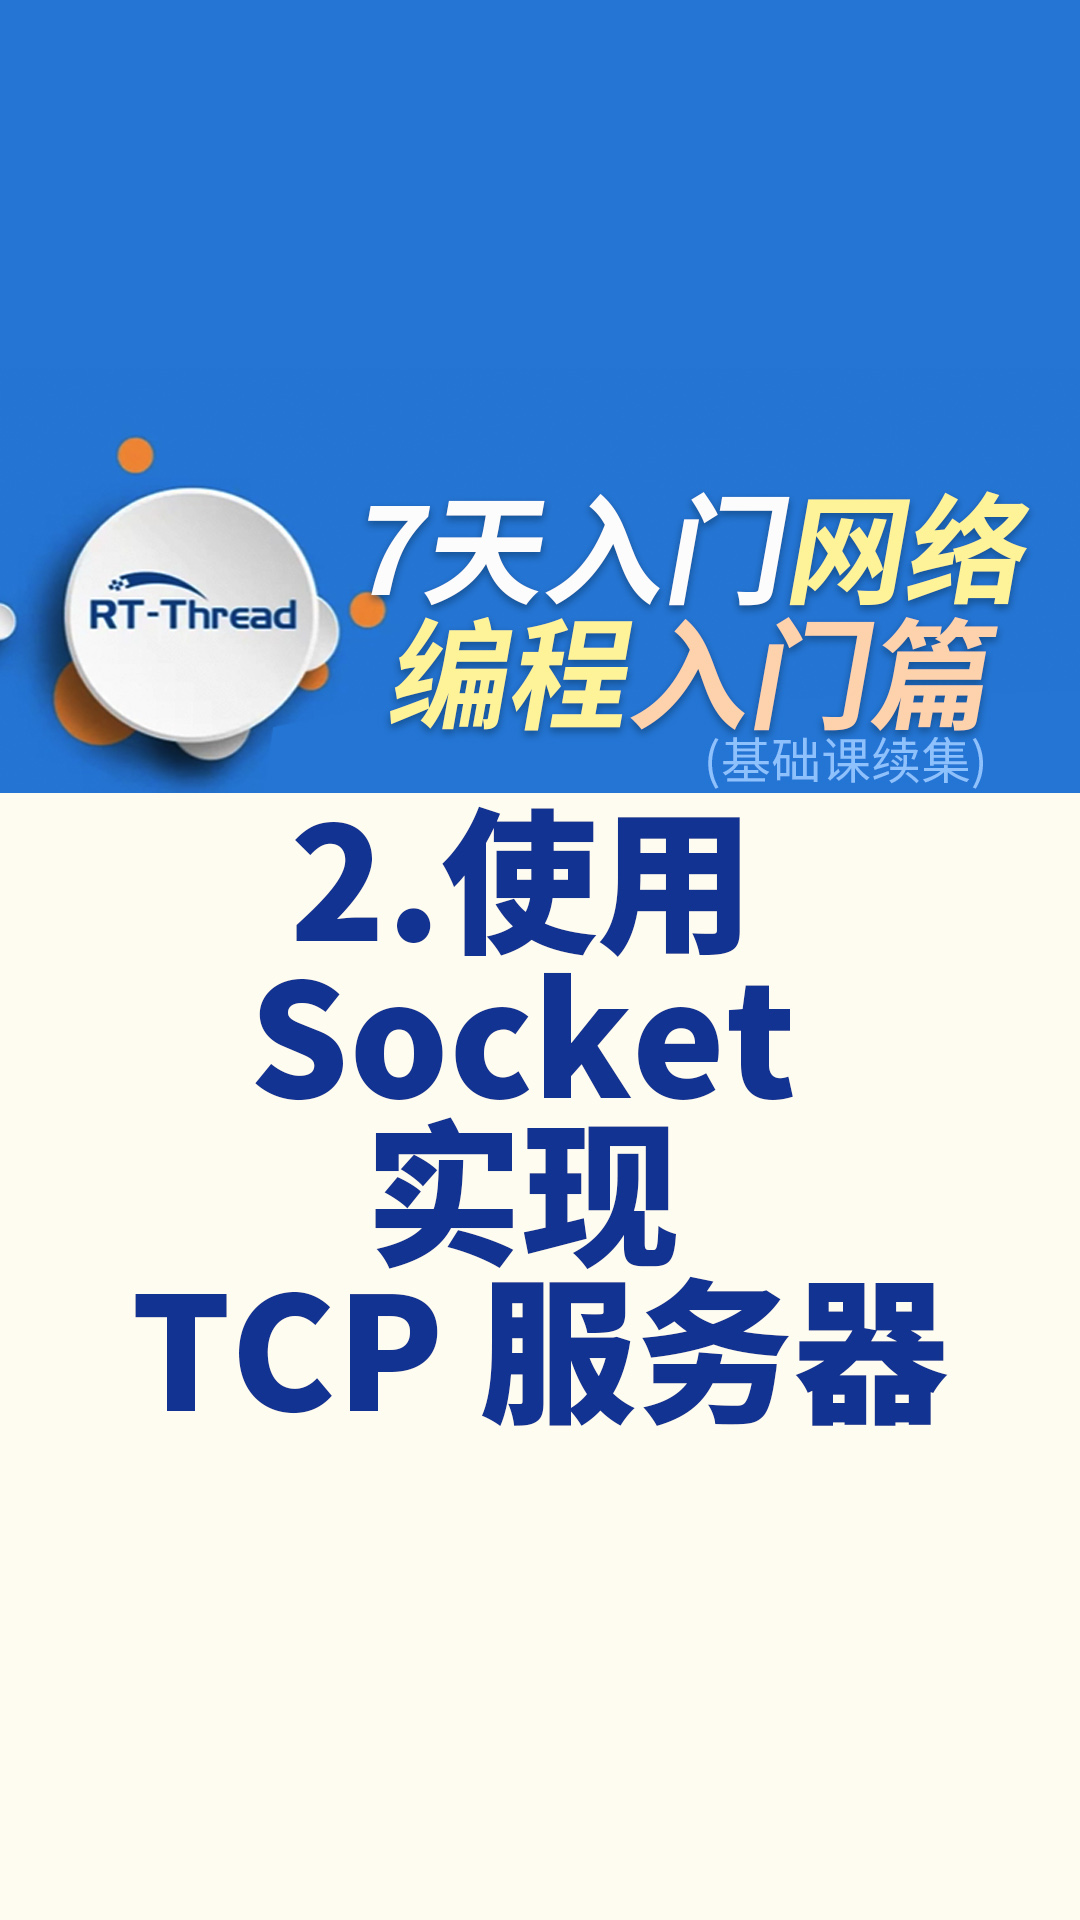 7天入门网络编程 - 2.使用 Socket 实现 TCP 服务器   #网络编程 